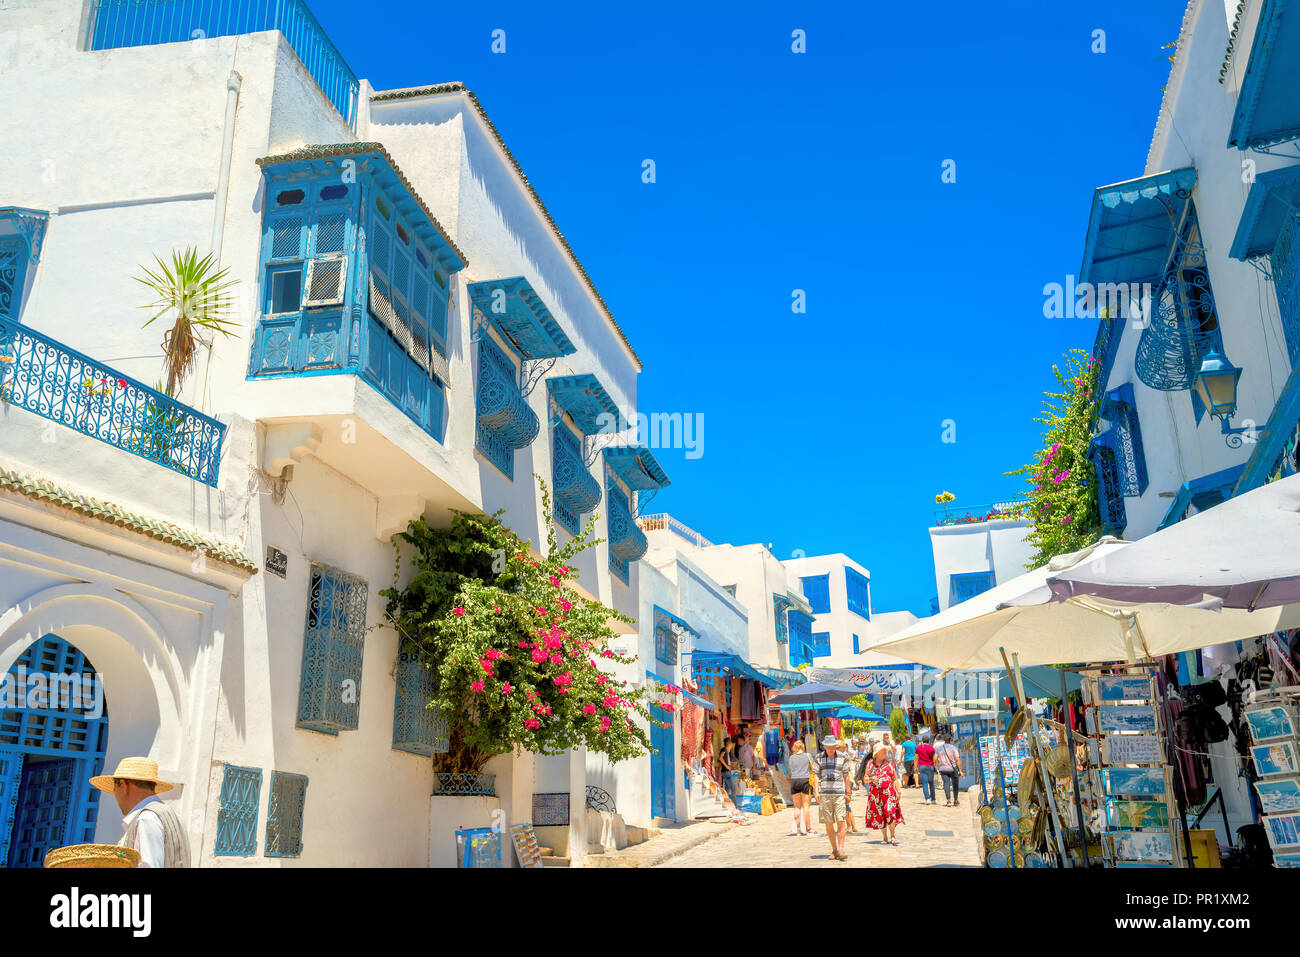 La principal calle de tiendas de la ciudad azul y blanca de Sidi Bou Said. Túnez, Norte de África Foto de stock